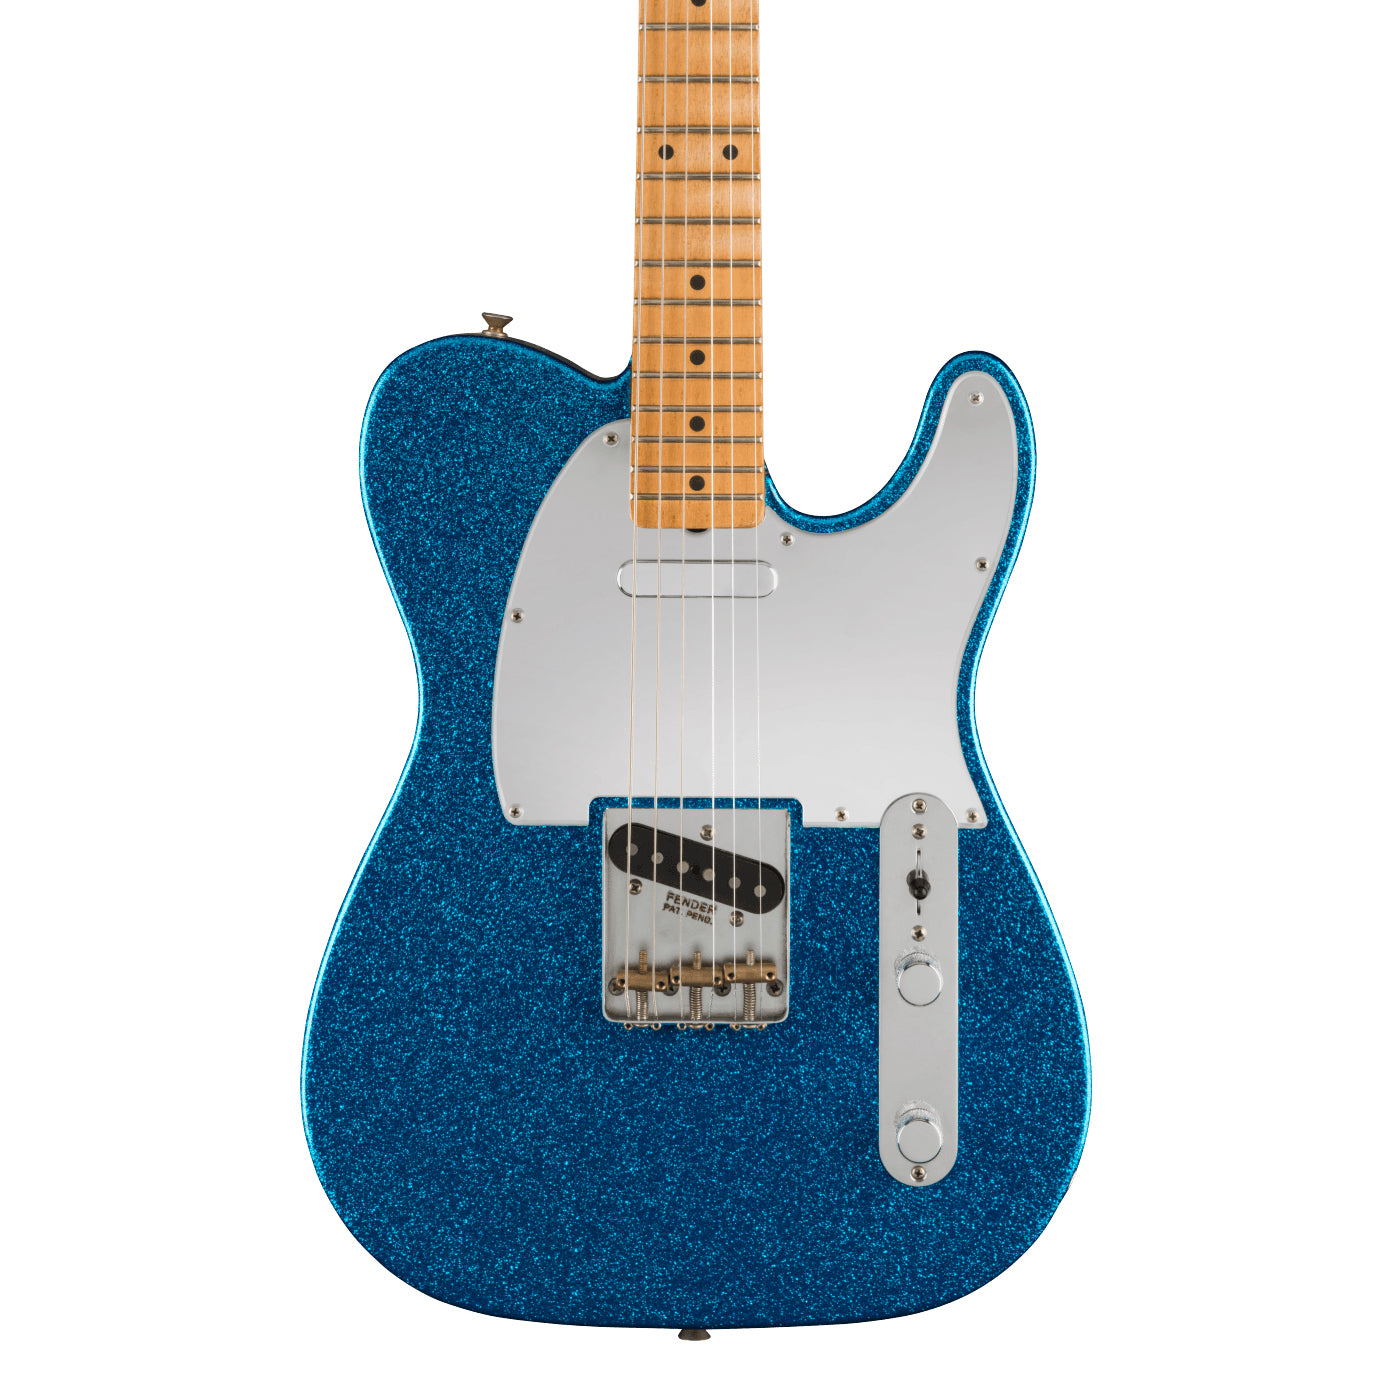 Fender J Mascis Telecaster Electric Guitar in Bottle Rocket Blue Flake